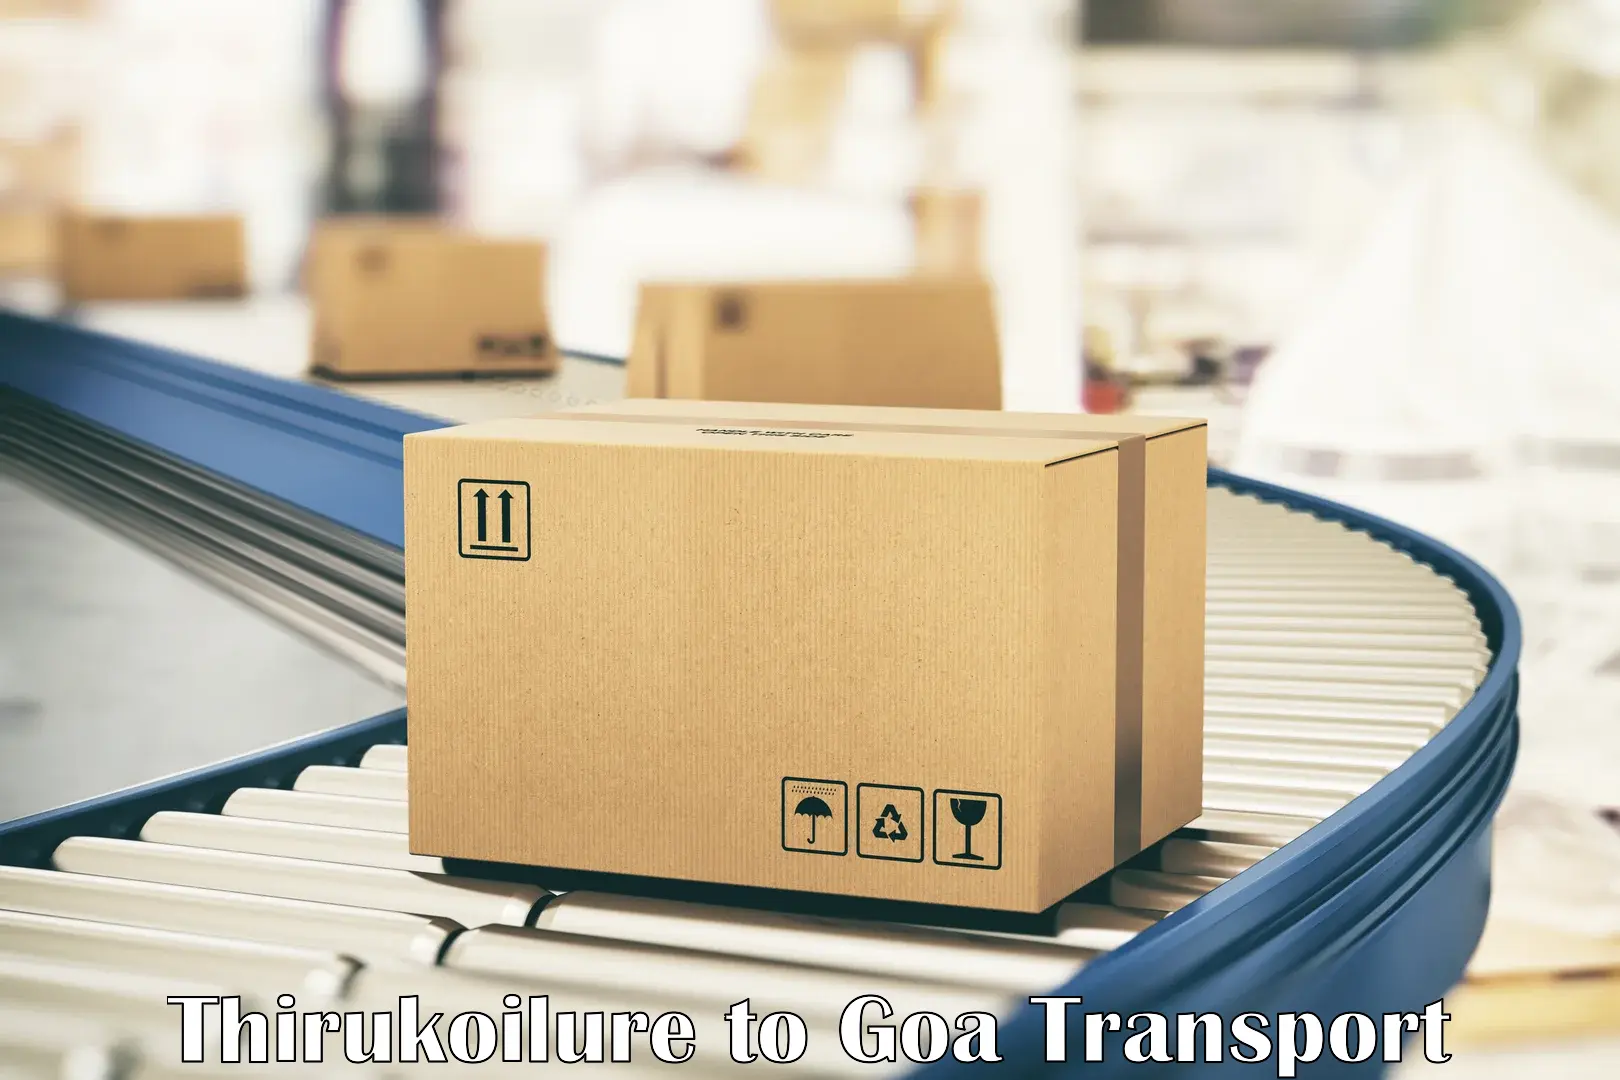 Cargo transportation services Thirukoilure to Goa